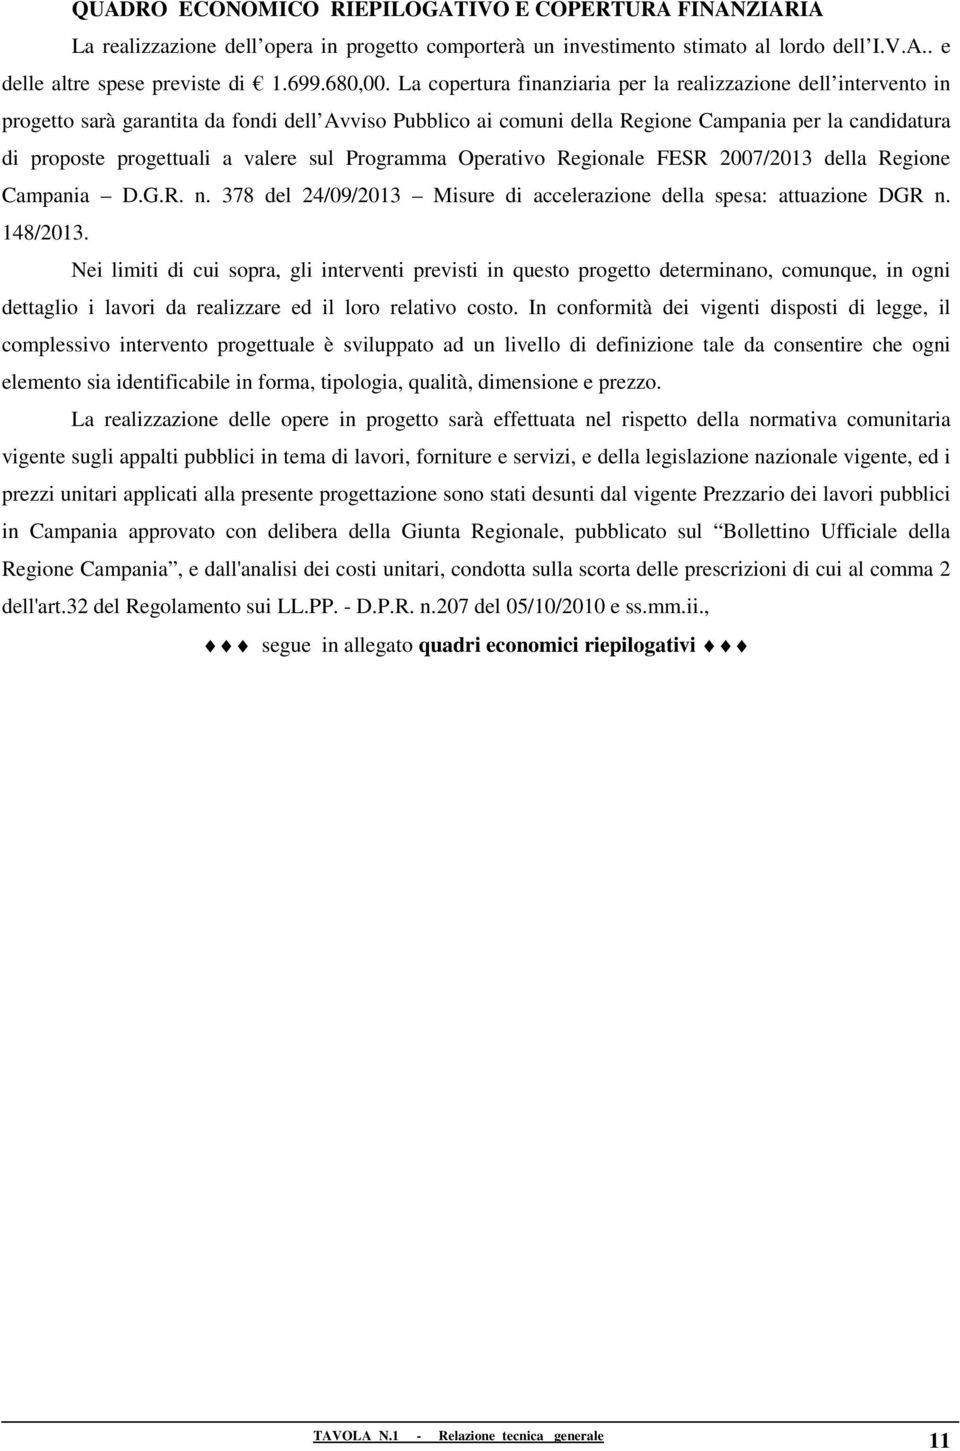 valere sul Programma Operativo Regionale FESR 2007/2013 della Regione Campania D.G.R. n. 378 del 24/09/2013 Misure di accelerazione della spesa: attuazione DGR n. 148/2013.